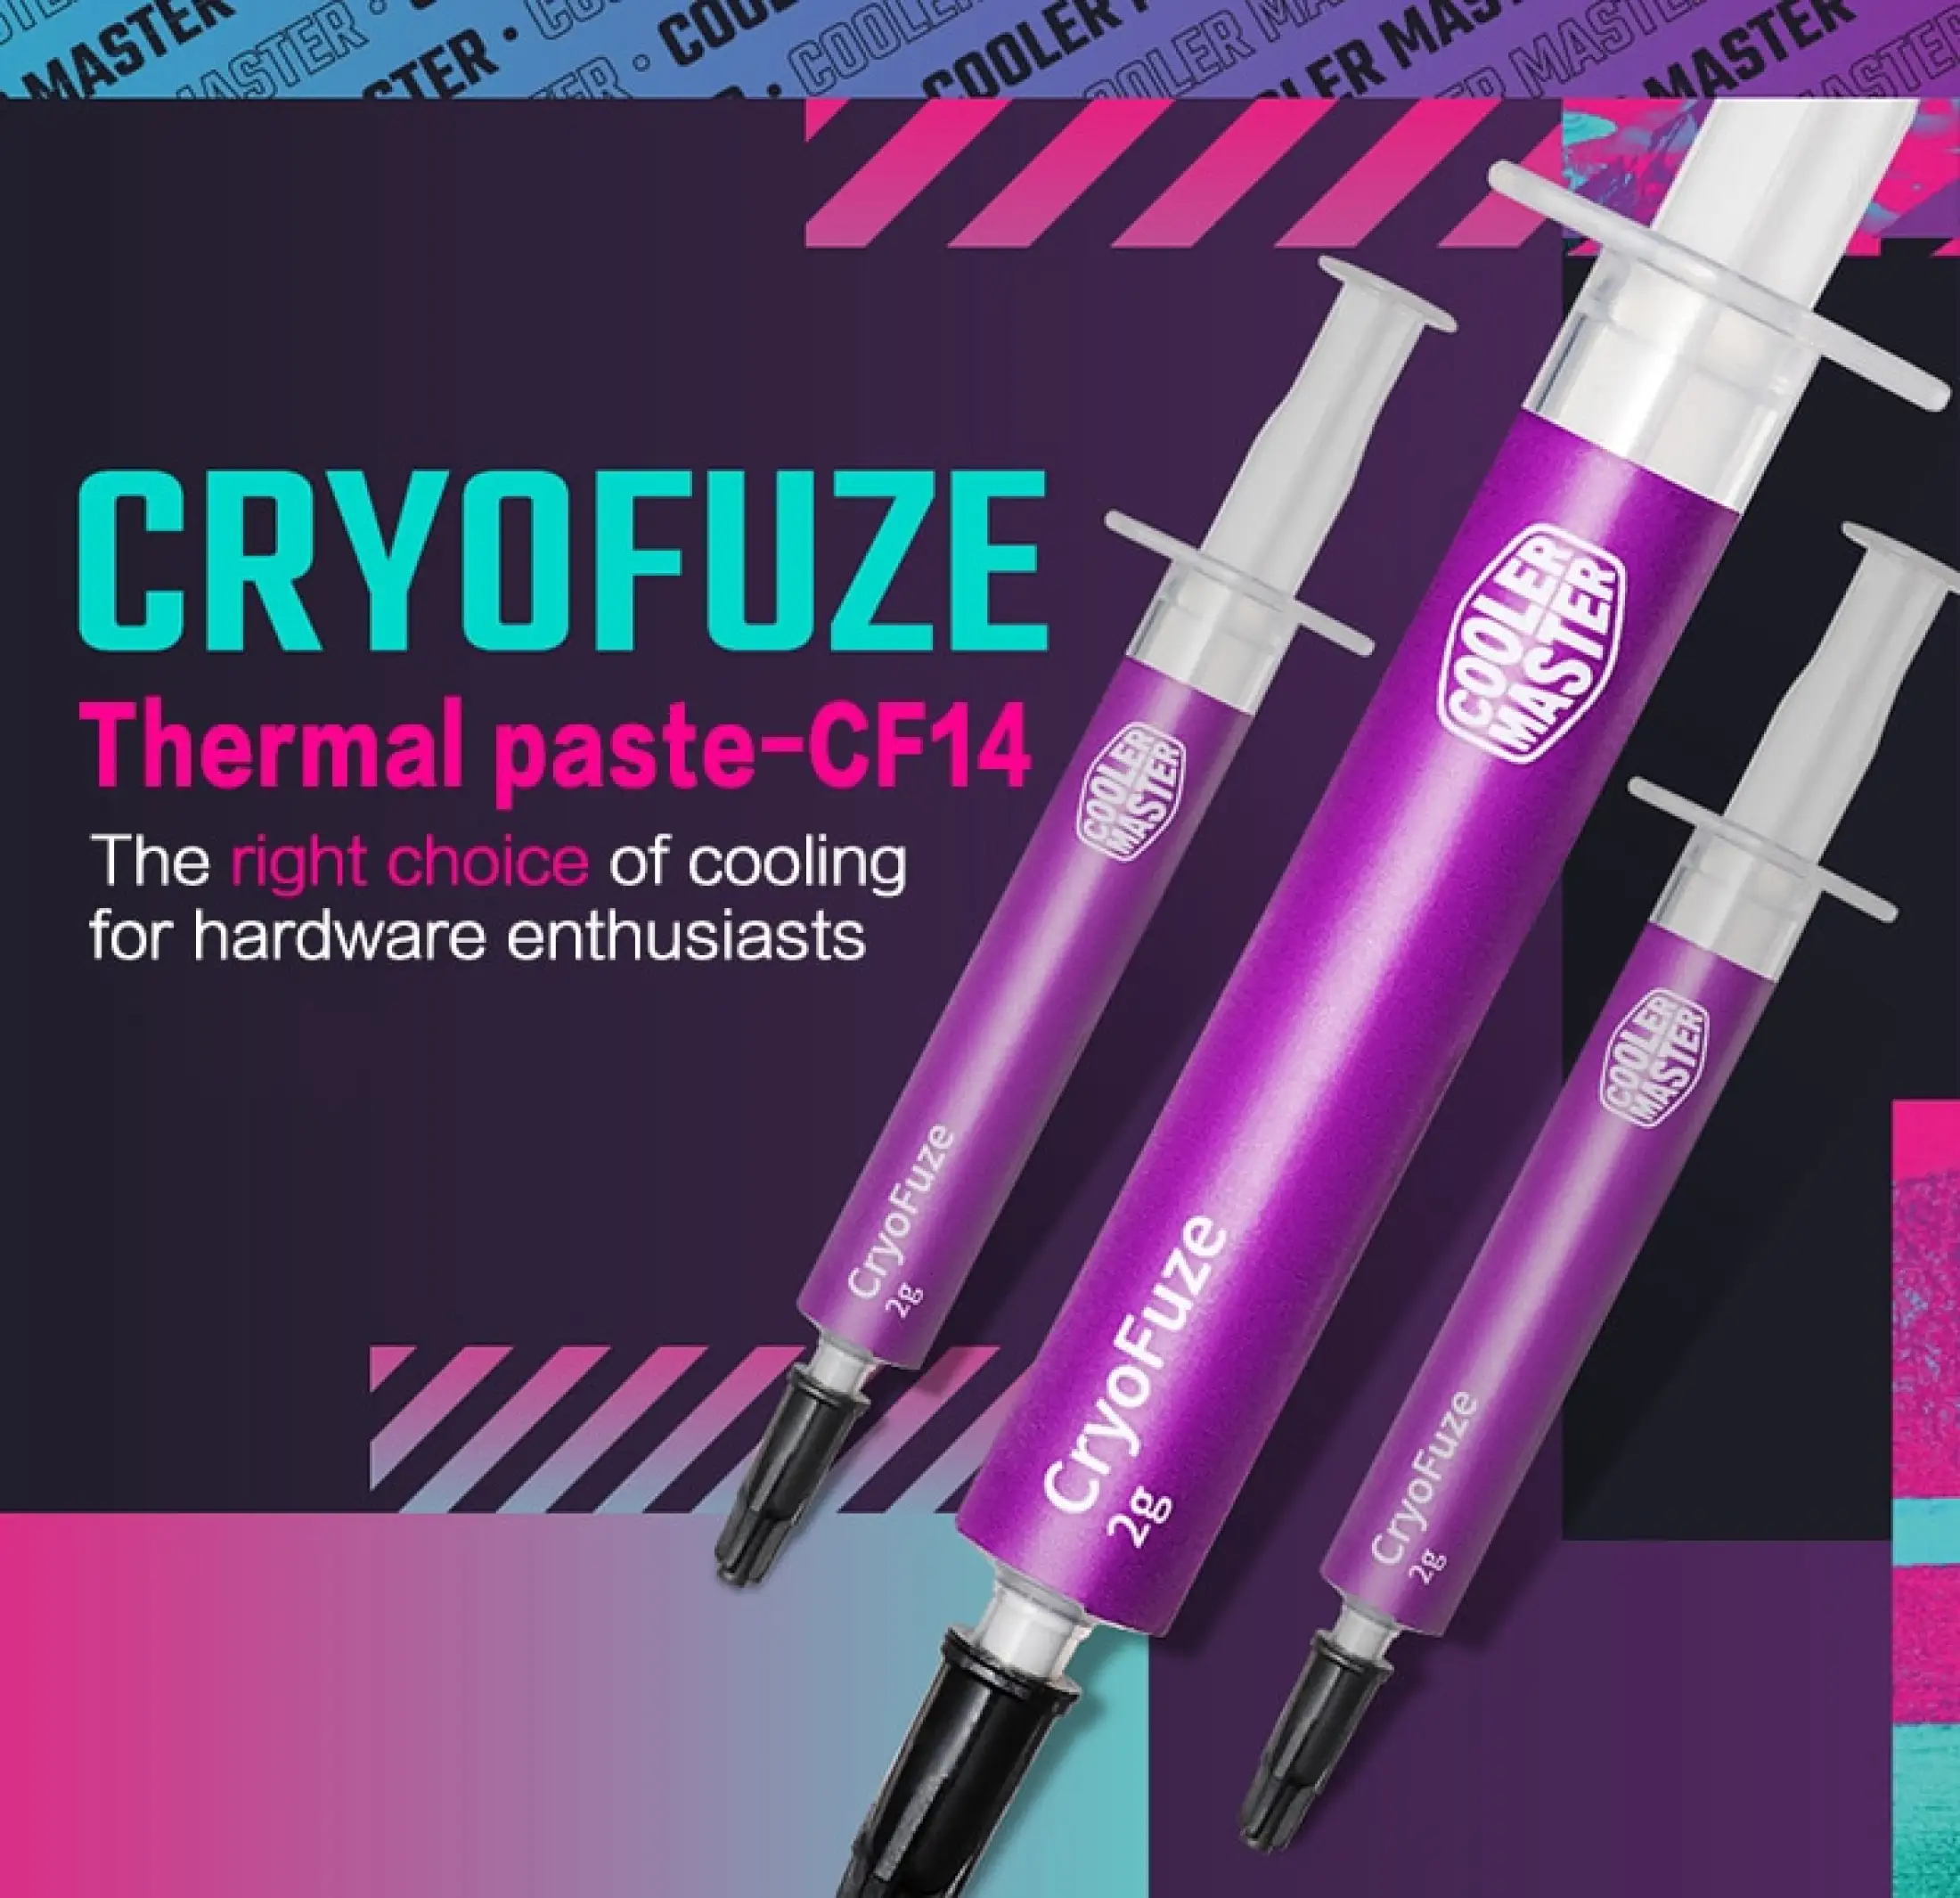 Cooler Master Cryofuze CF14 